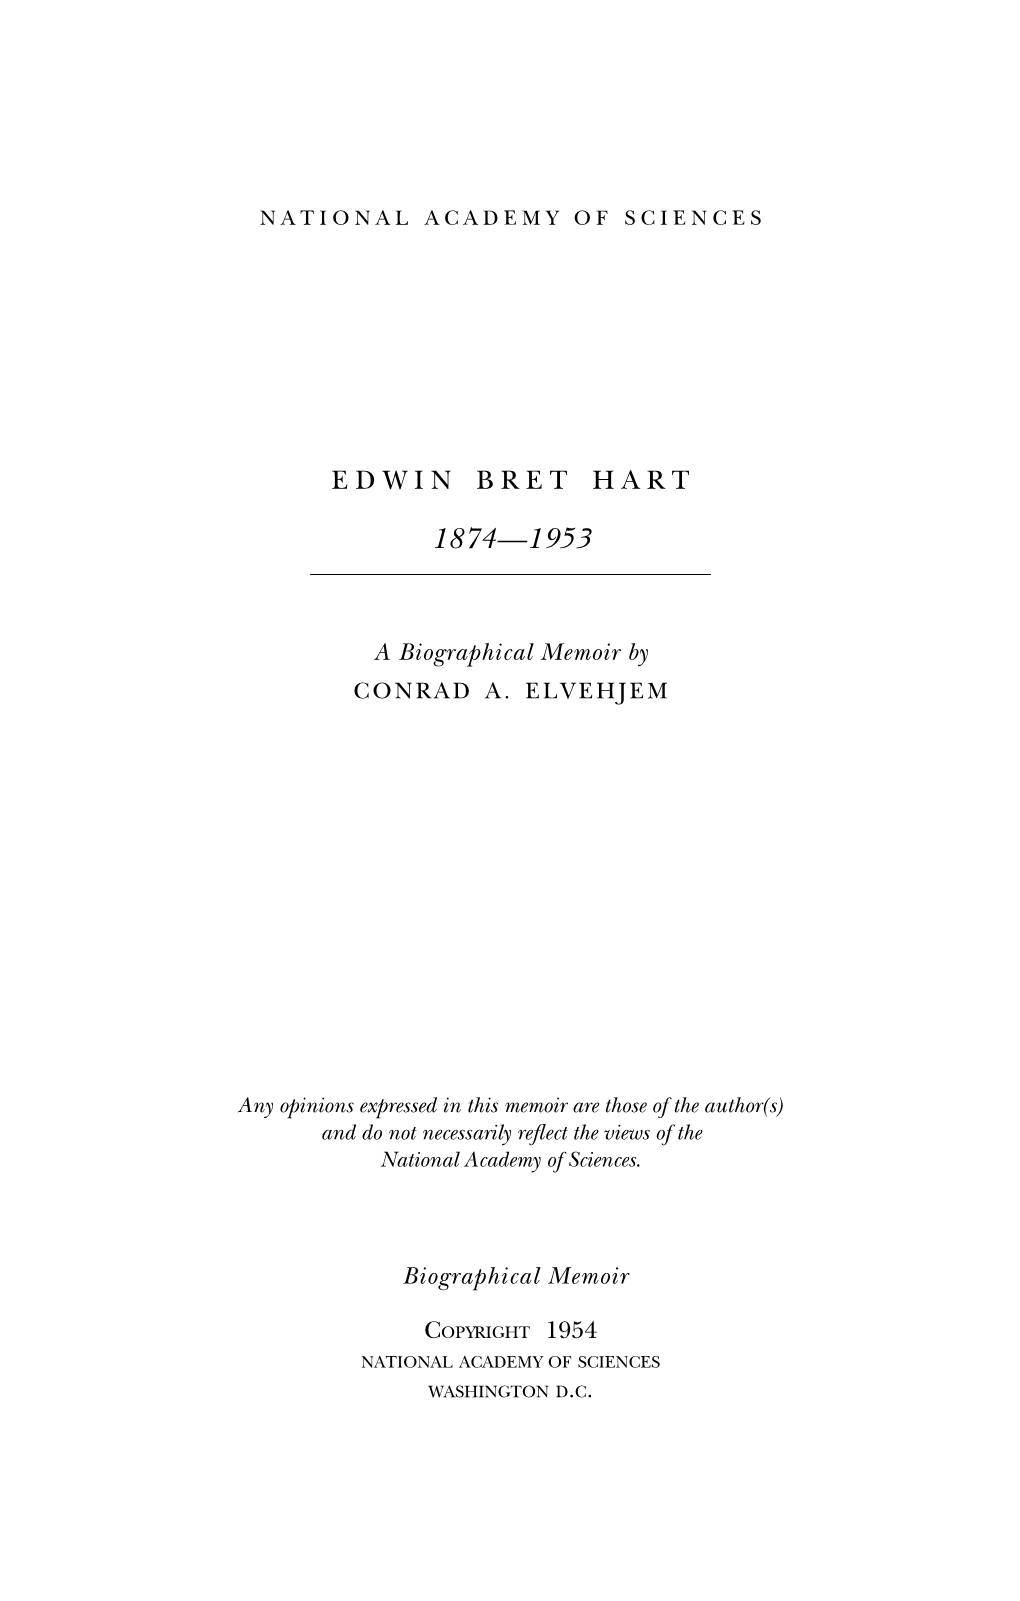 Edwin Bret Hart 1874-1953